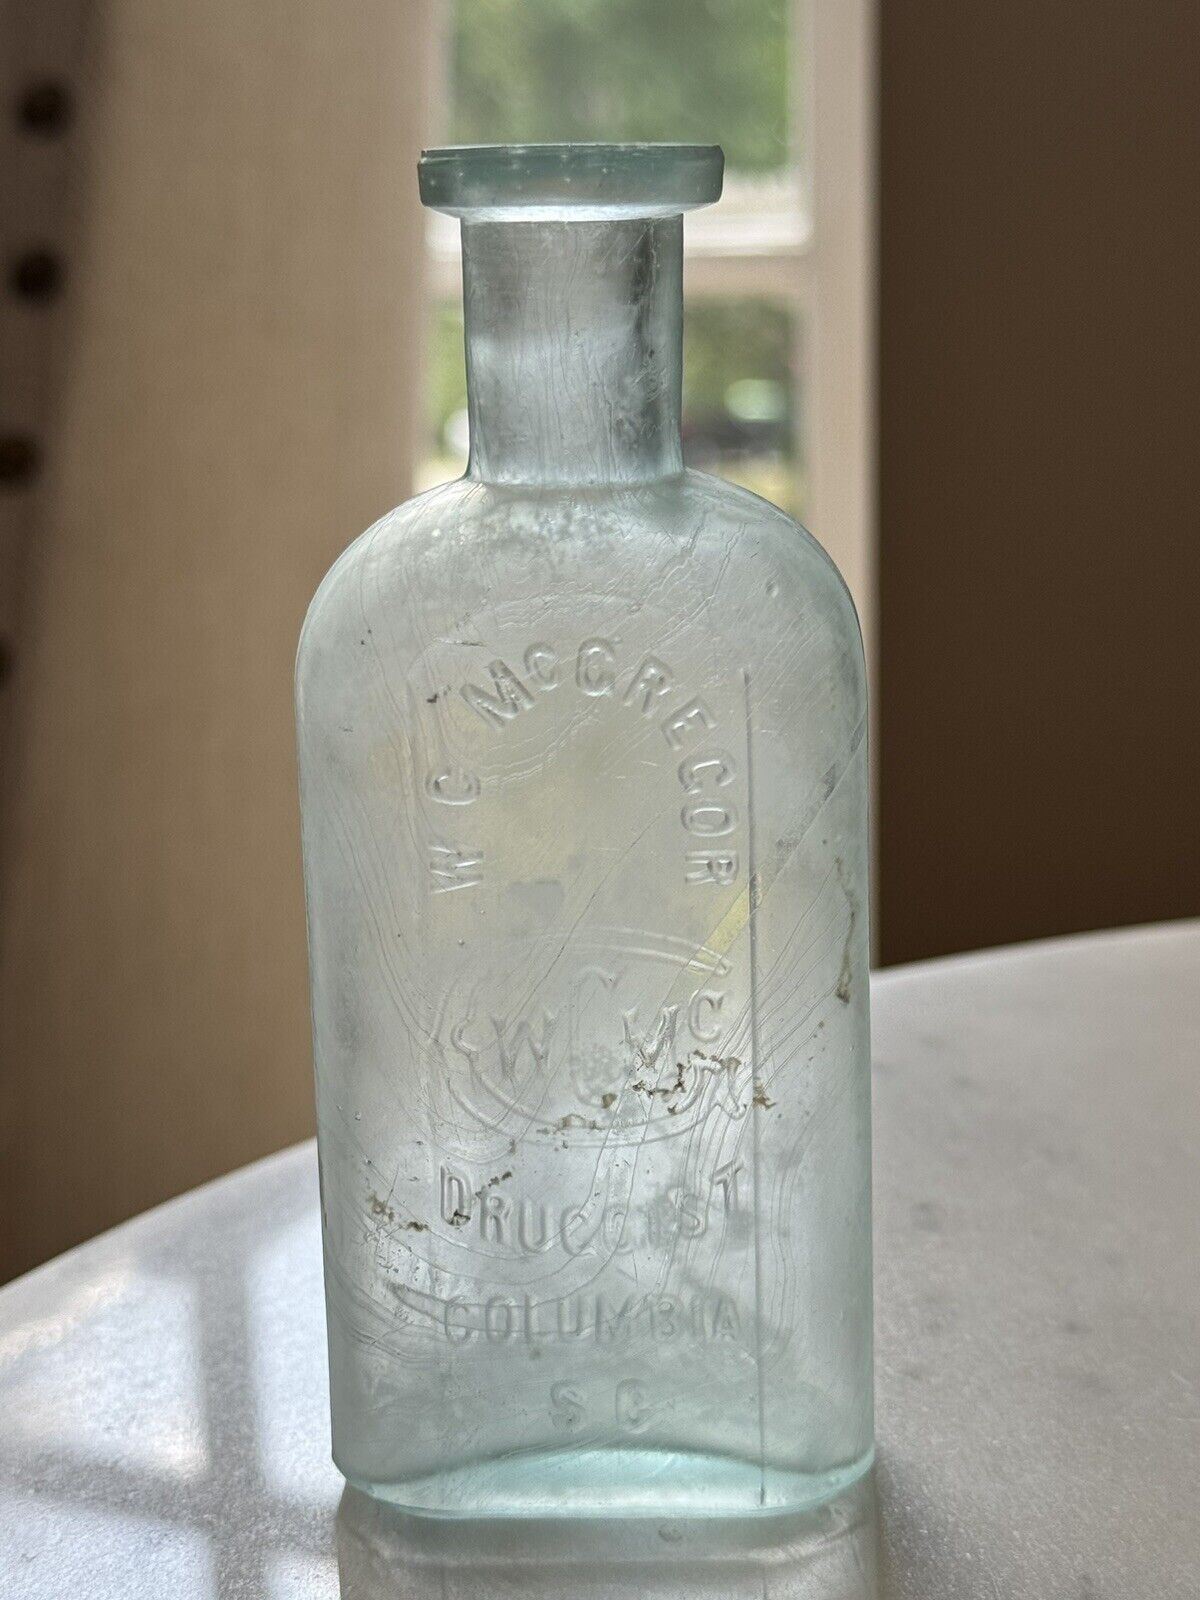 1890s Antique Medicine Bottle: WC McGregor Druggist, Columbia, SC